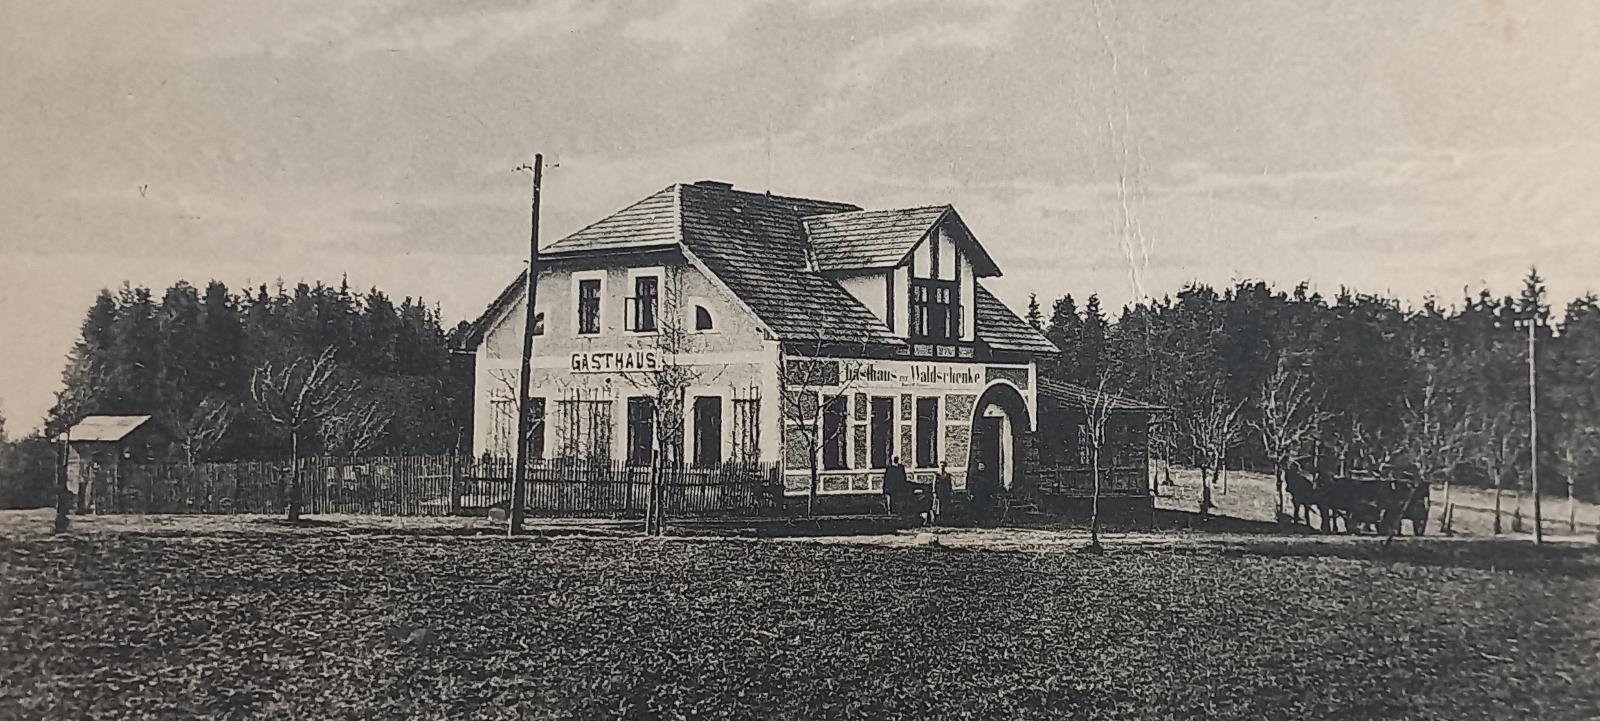 Pilníkov - Pilsdorf - okr. Trutnov - krčma Waldschenke - 1923 - Pohľadnice miestopis